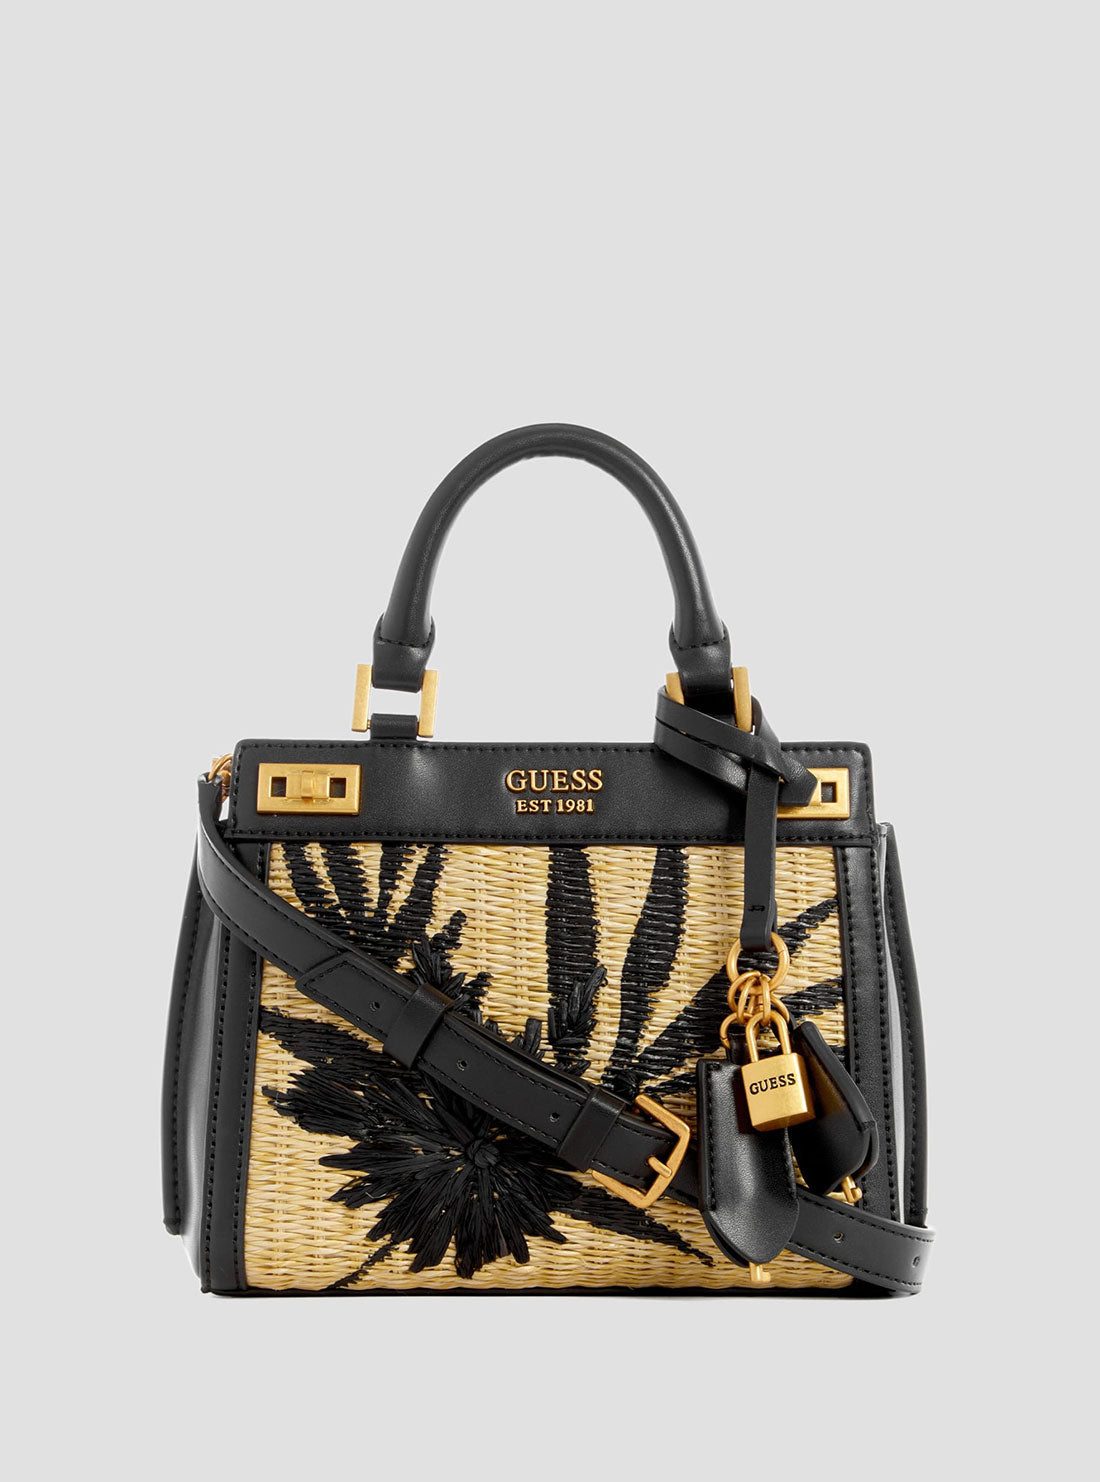 GUESS Women's Black Floral Katey Mini Satchel Bag WA787073 Front View